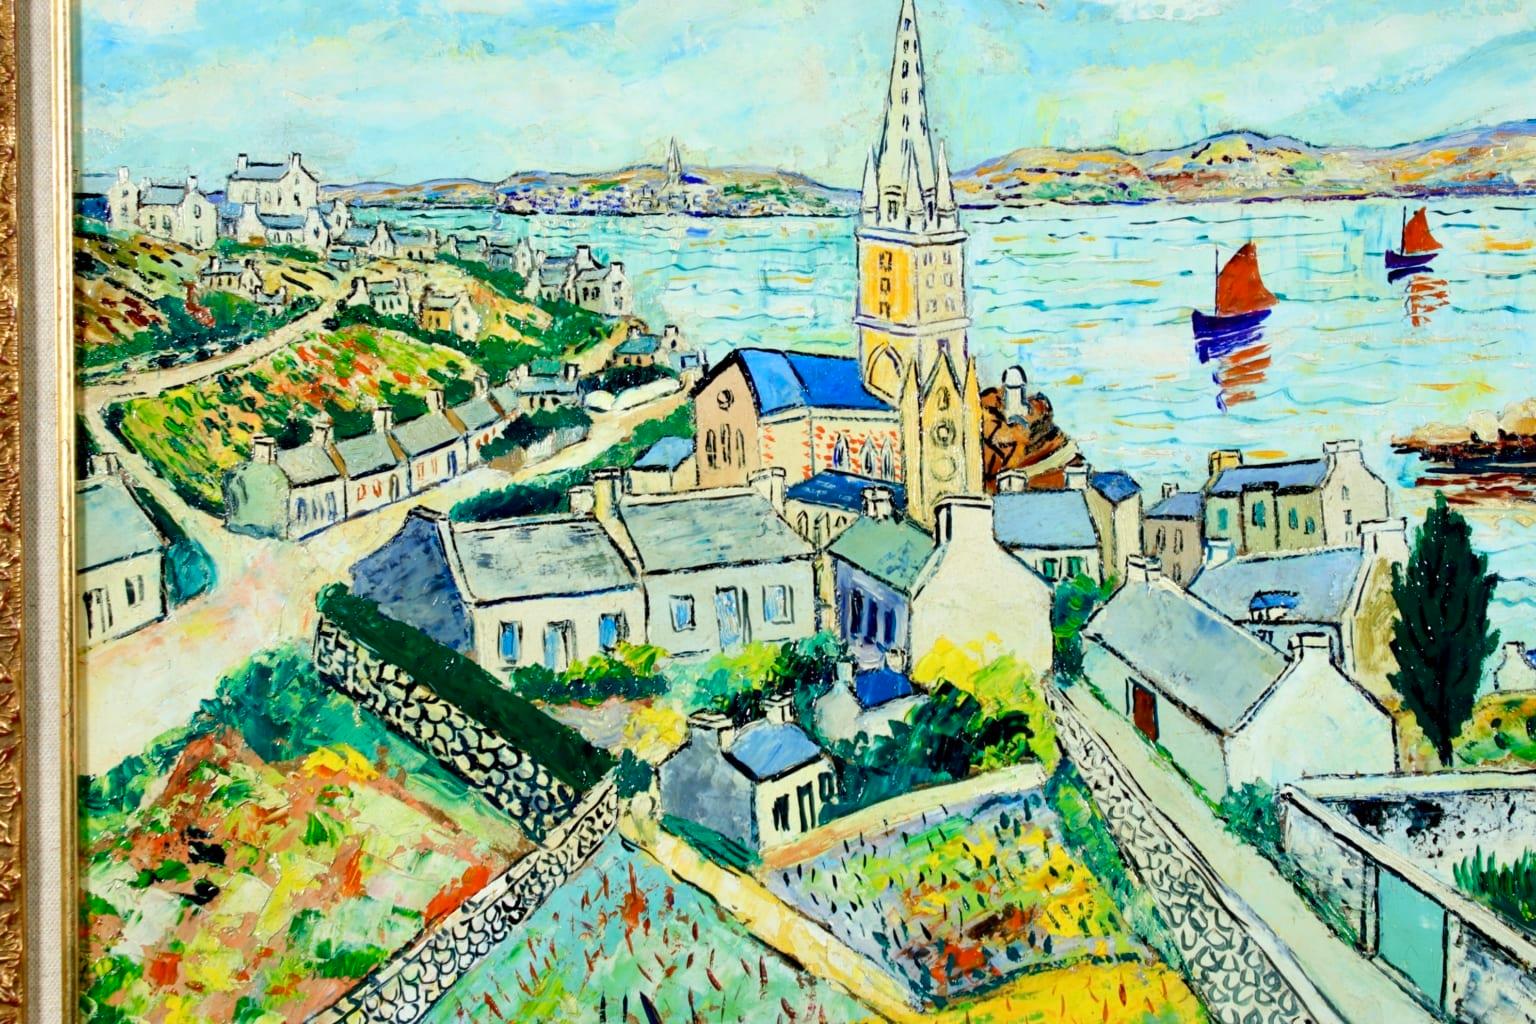 Une huile enchanteresse sur carton posé sur panneau de la peintre post-impressionniste française Elisee Maclet représentant la ville côtière française de l'Ile de Batz. L'église de la ville se trouve au centre du tableau et surplombe la baie où